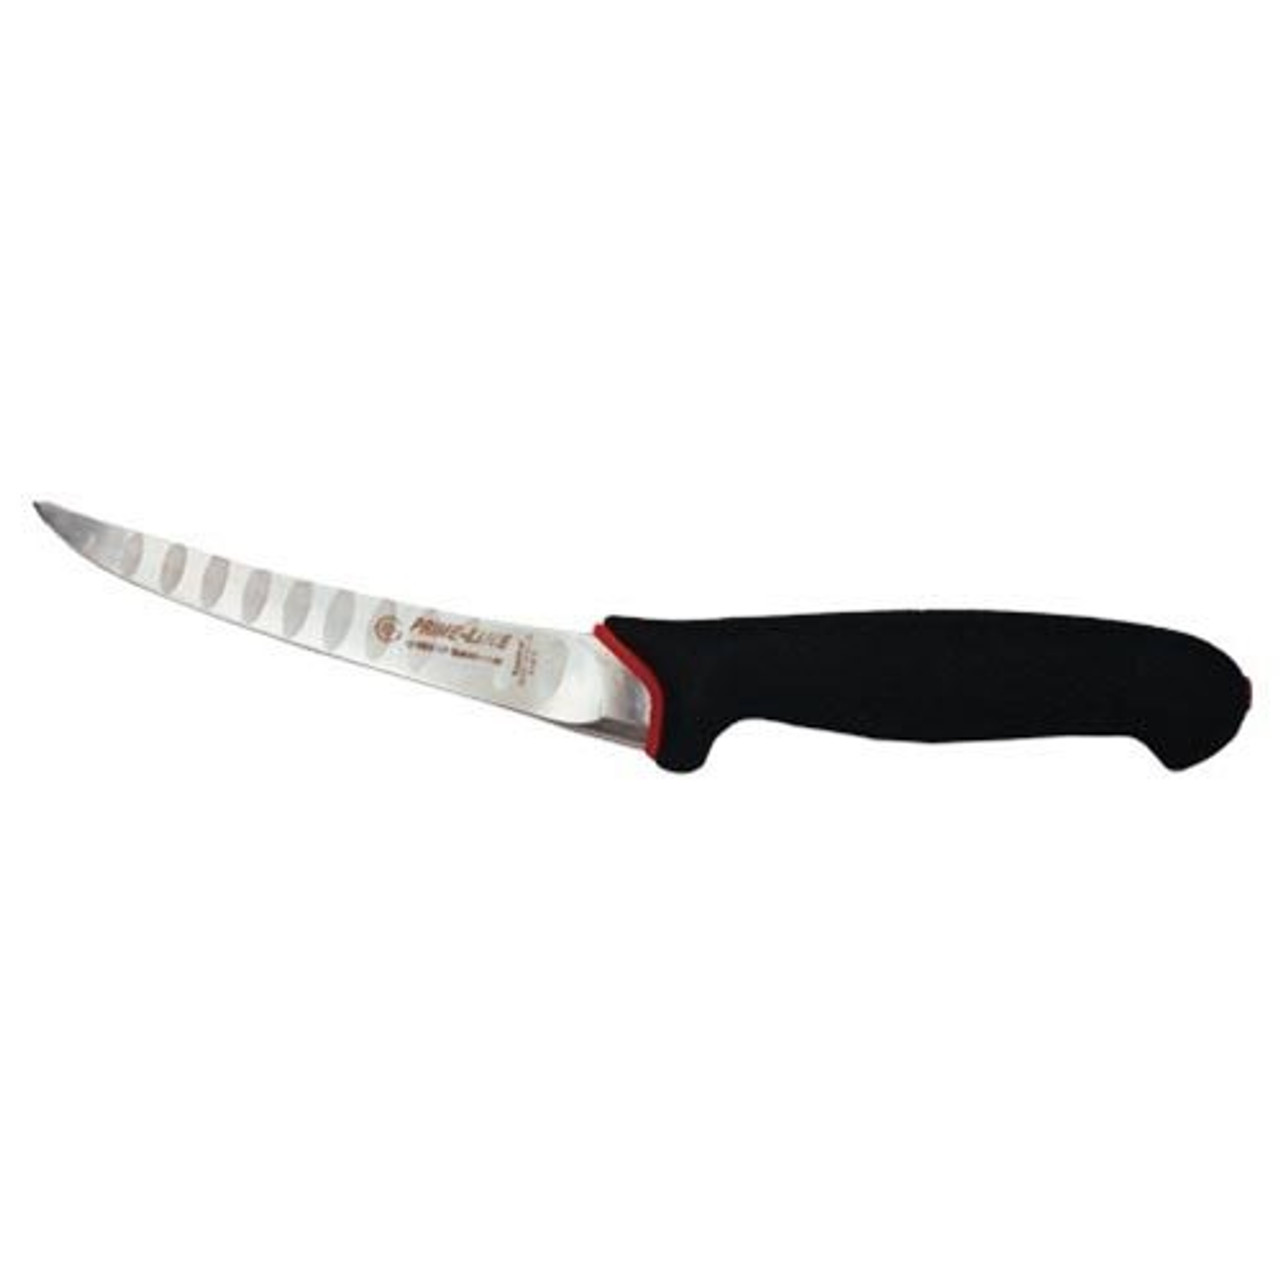 Gray Misen 3.5” paring knife : r/HelpMeFind